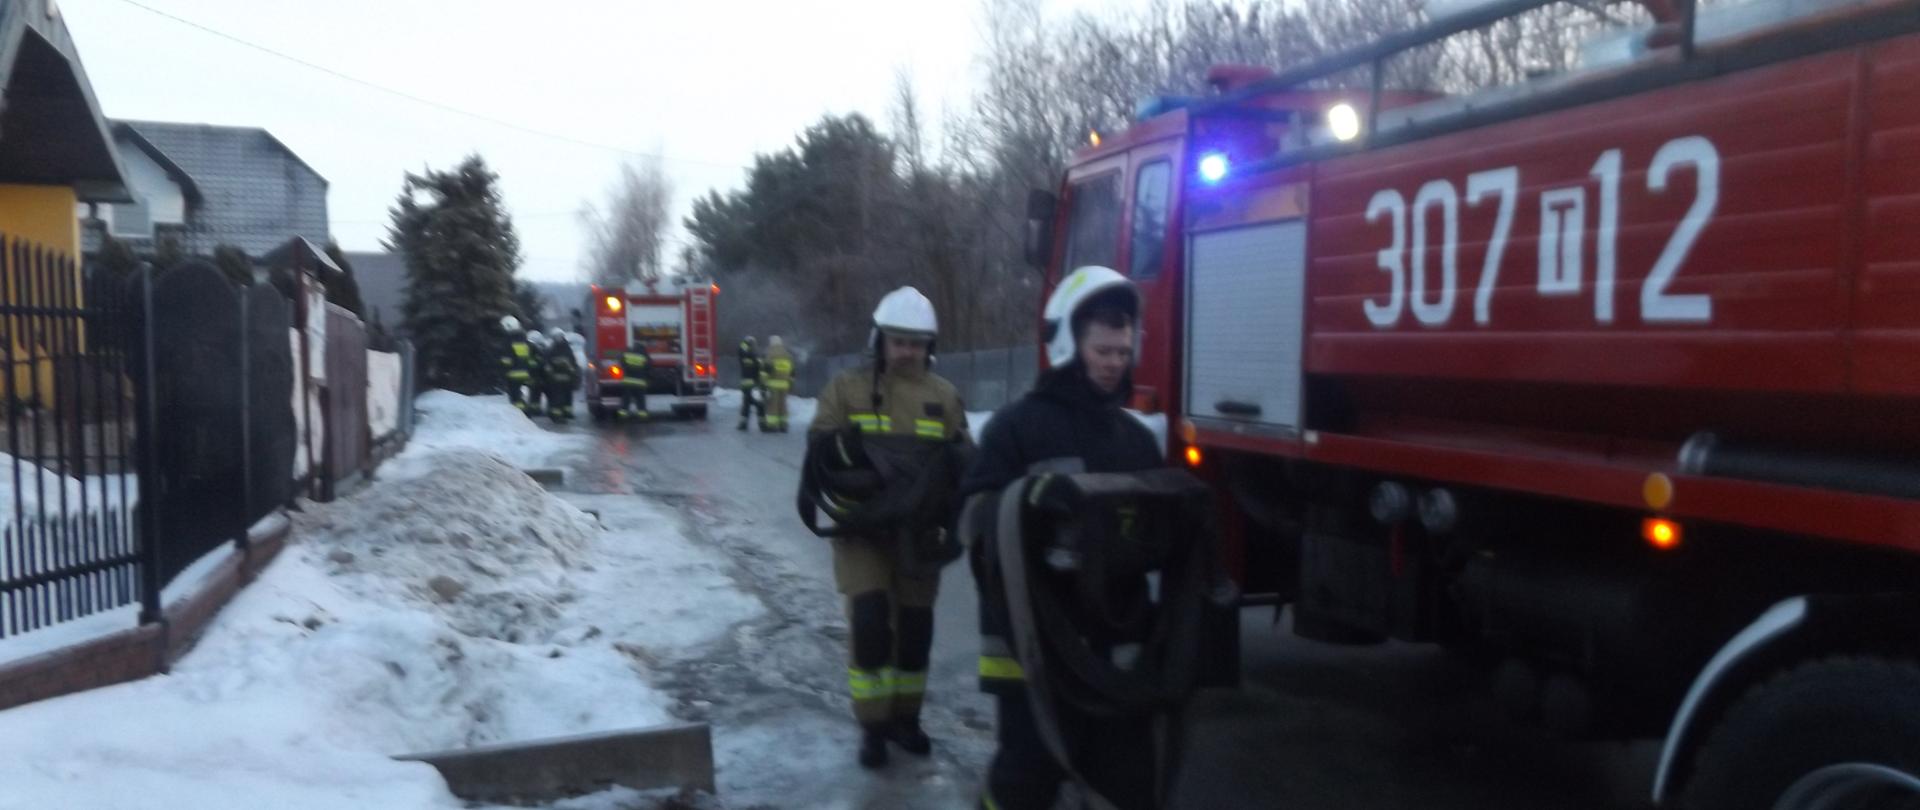 Zdjęcie przedstawia strażaków, którzy ze zwiniętymi wężami idą w kierunku samochodu strażackiego. W tle widać drugi samochód straży pożarnej i grupę strażaków. 